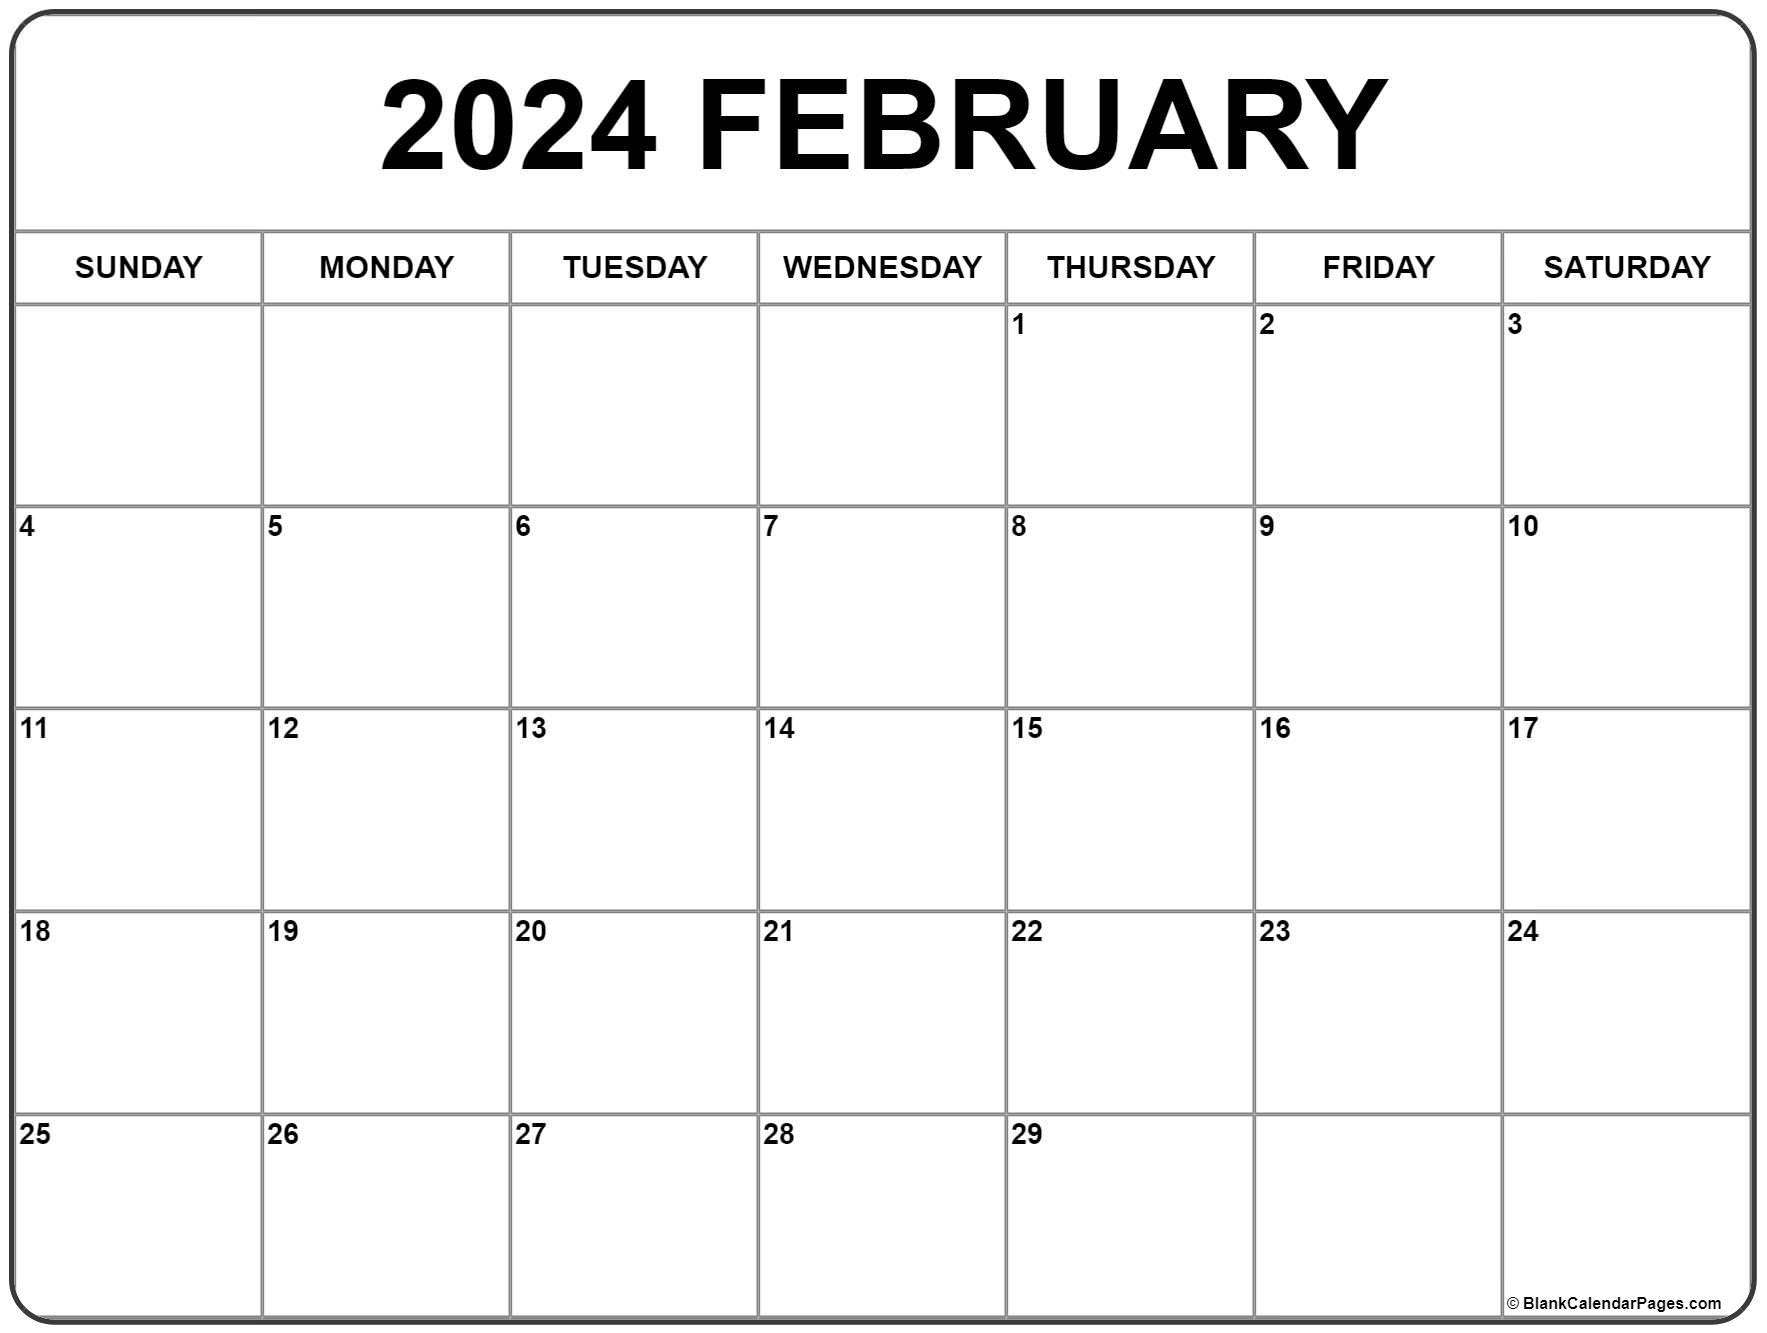 Calendar 2021 February February 2021 calendar | free printable monthly calendars